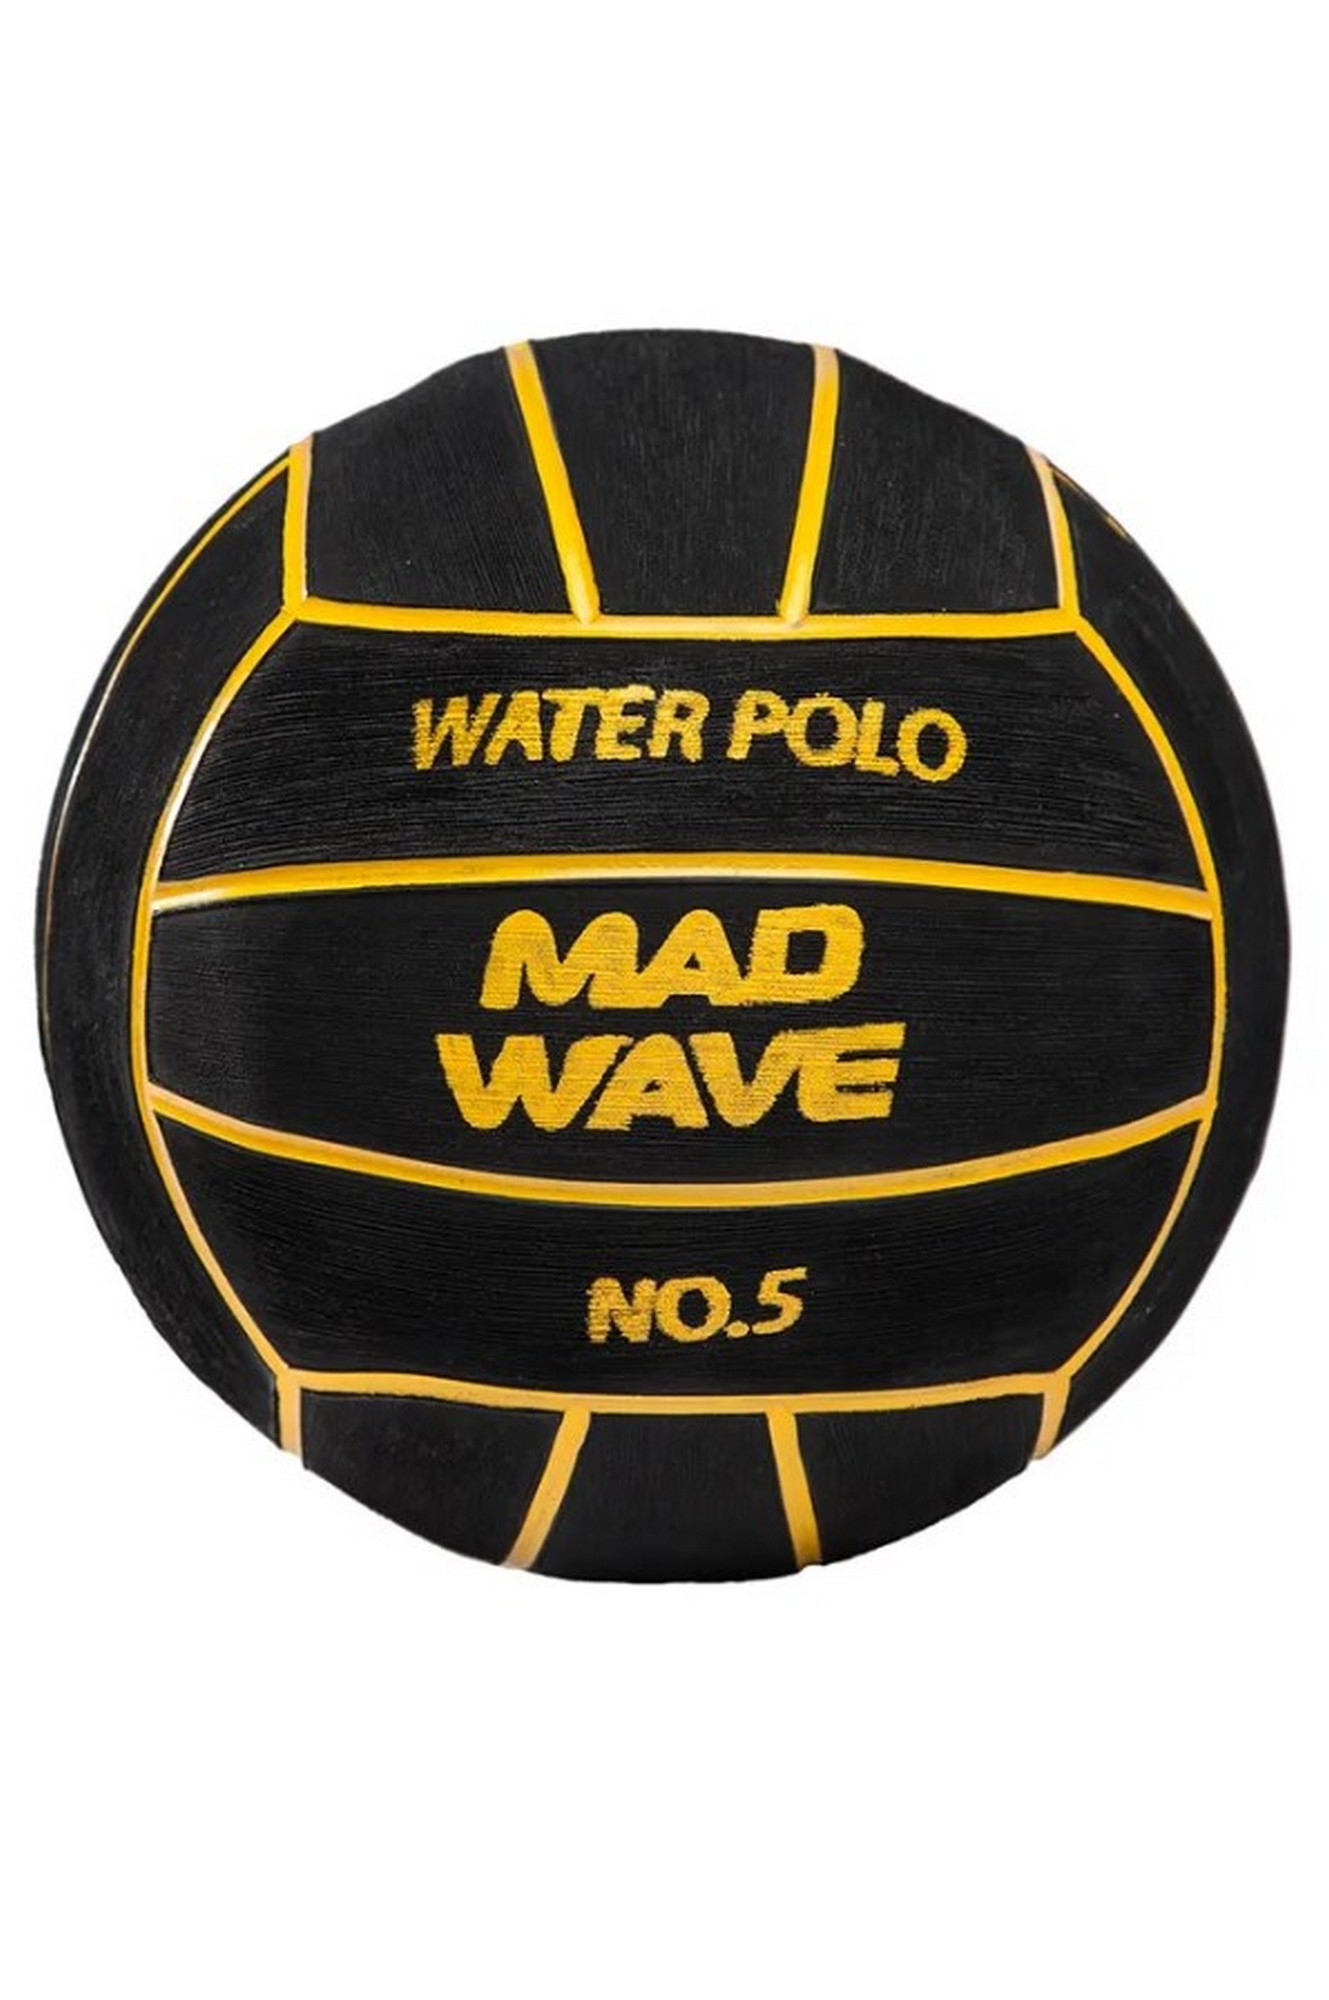 Мяч для водного поло Mad Wave WP Official #5 M2230 01 5 01W 1329_2000